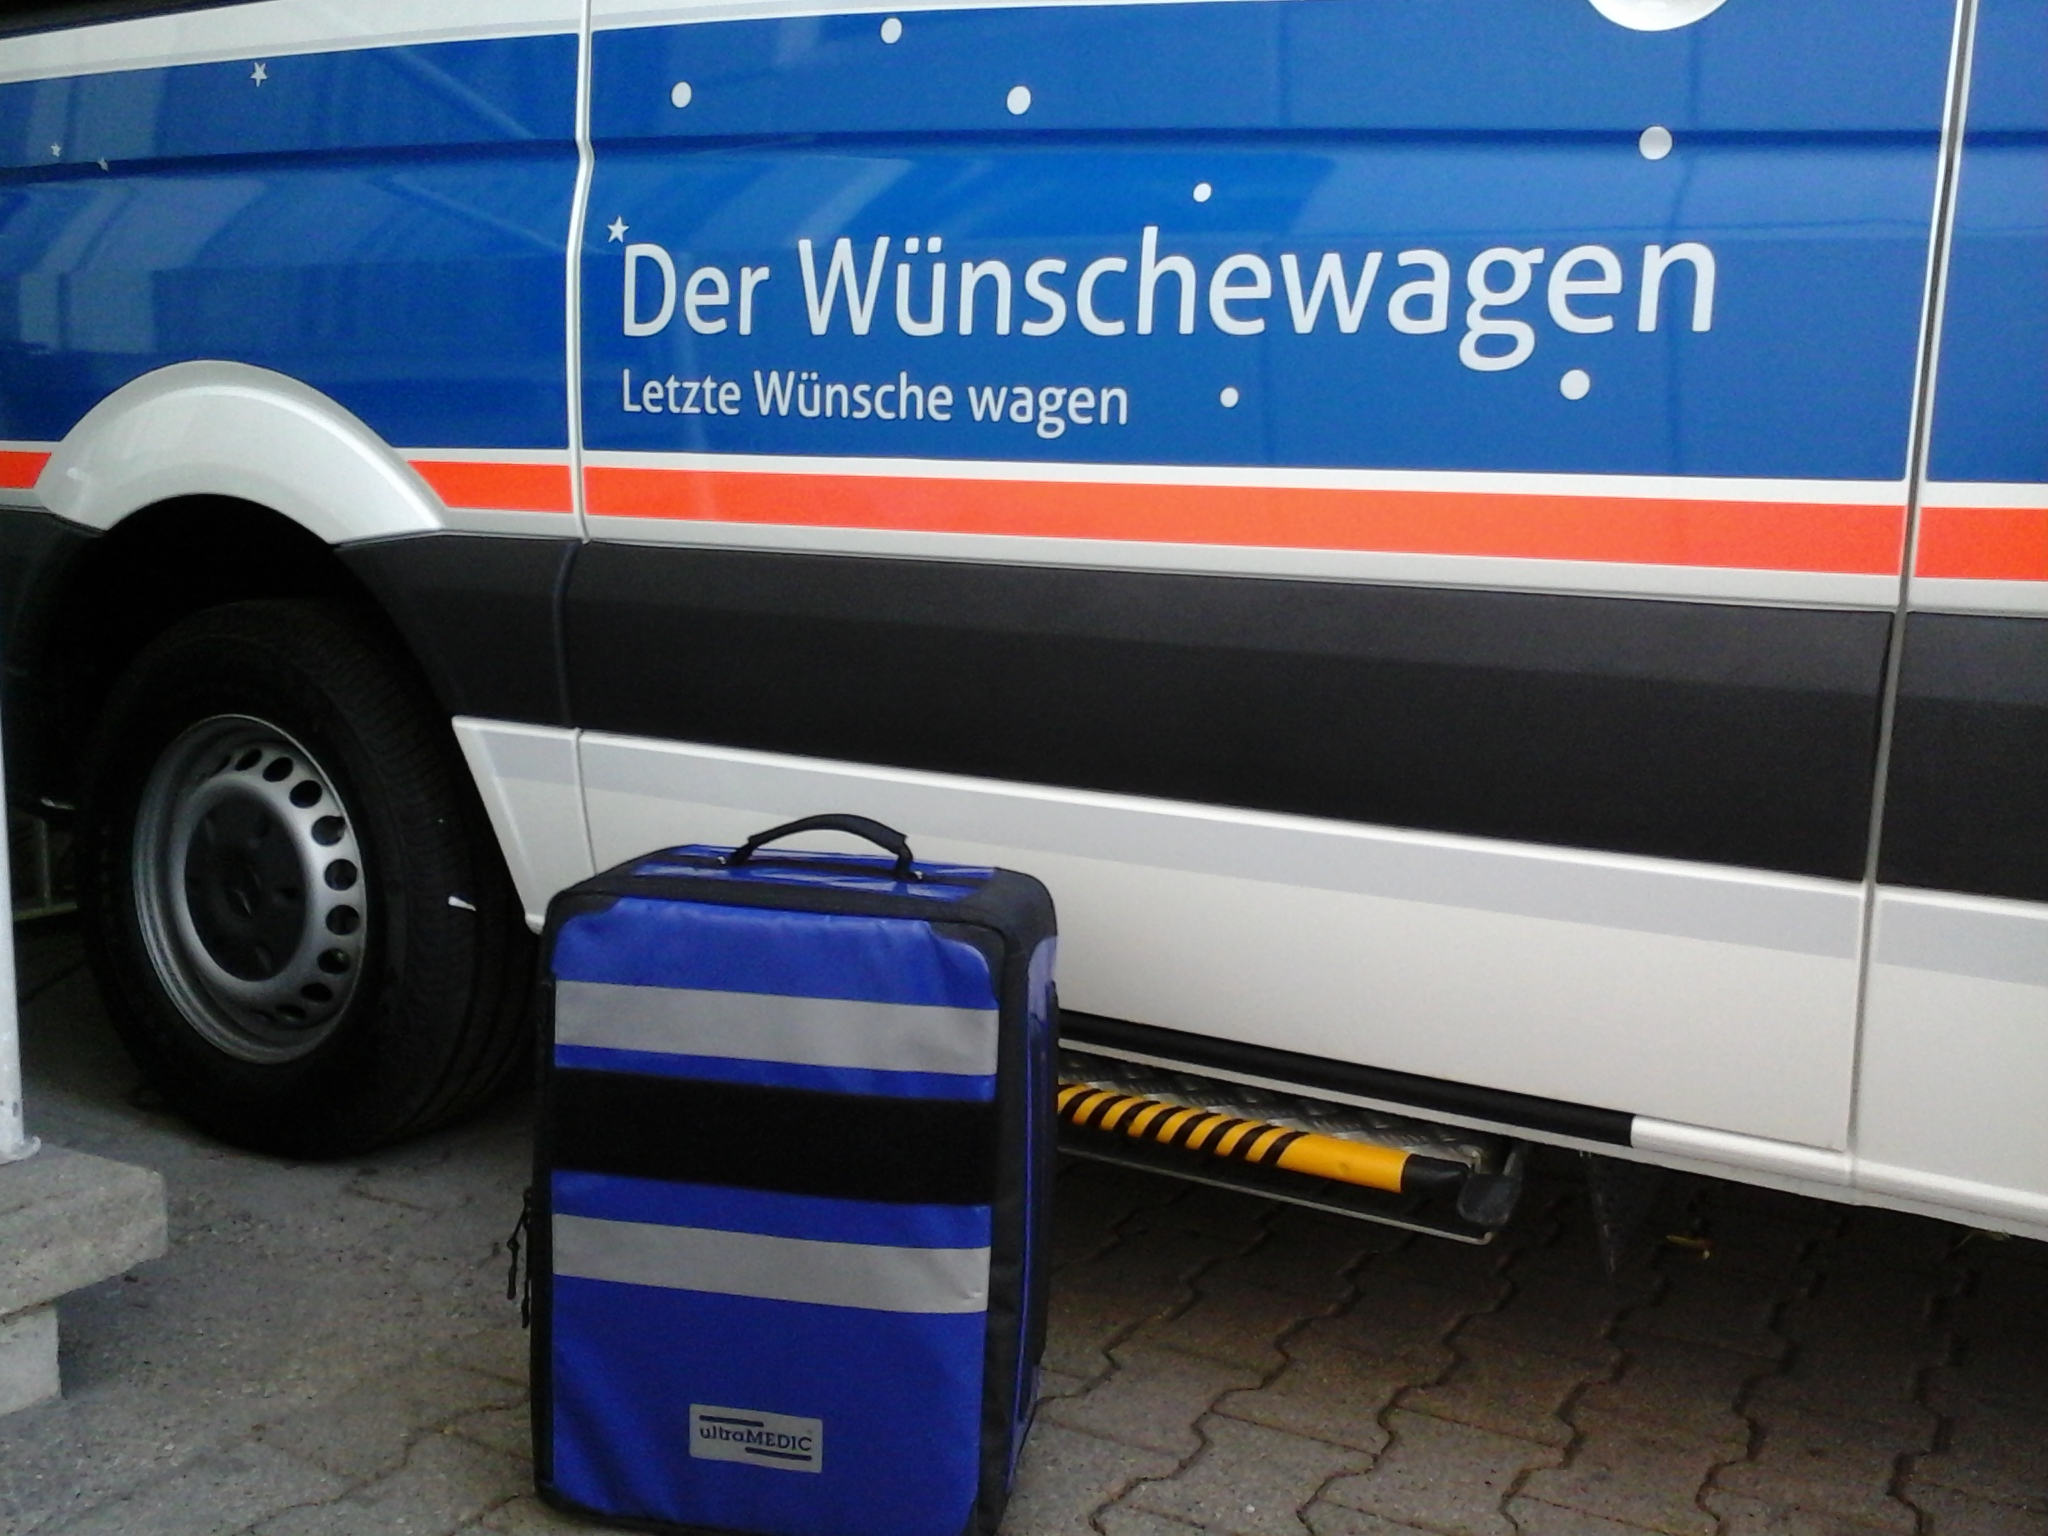 Kreisvorsitzender Holger Scharff: „Der Wünschewagen kommt und will helfen letzte Wünsche zu wagen“